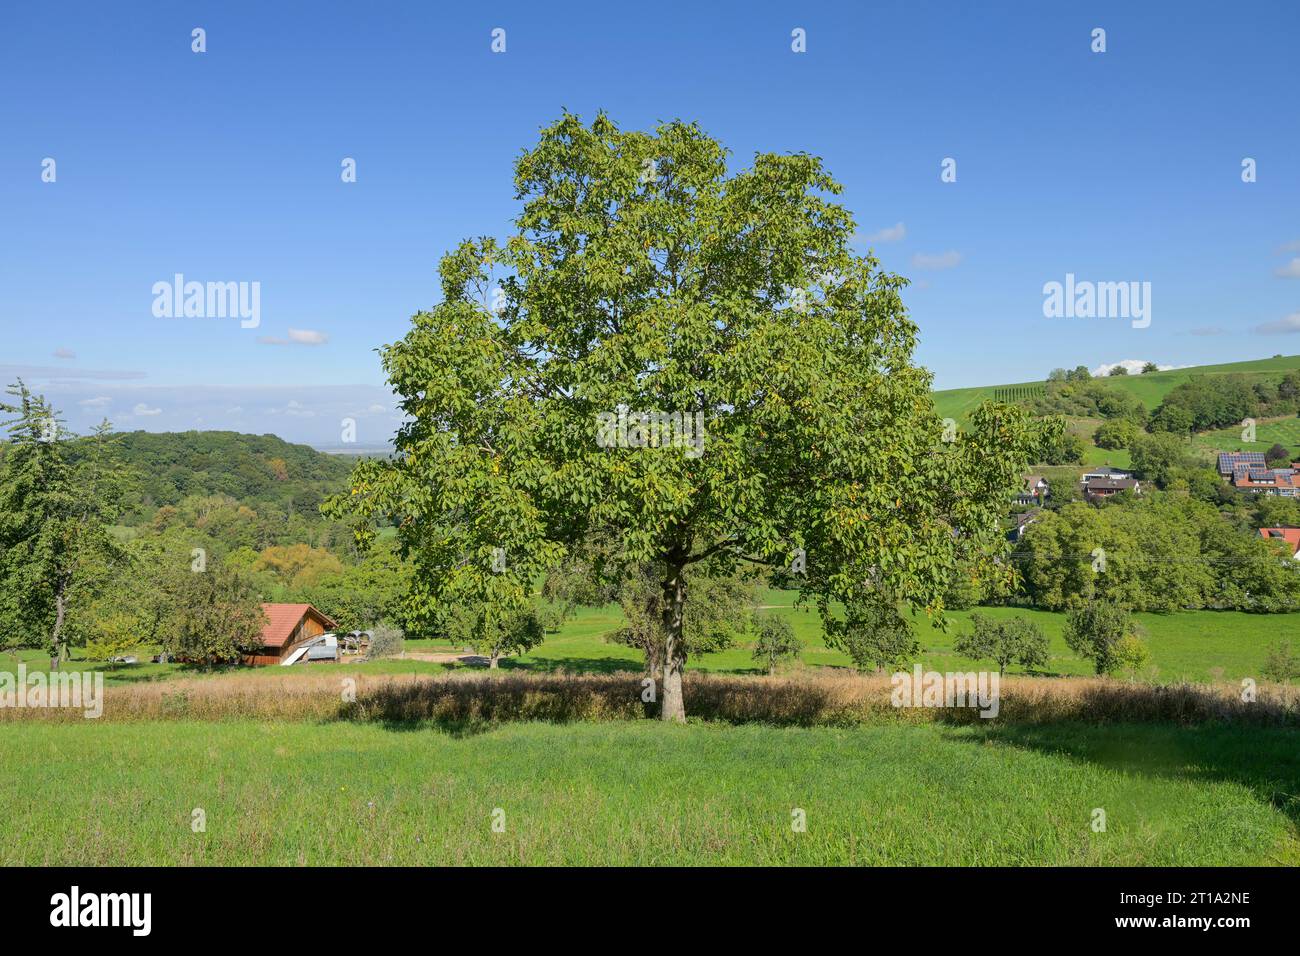 Wiese, Edelkastanie (Castanea sativa) bei Lipburg, Badenweiler, Markgräflerland, Baden-Württemberg, Deutschland Foto Stock